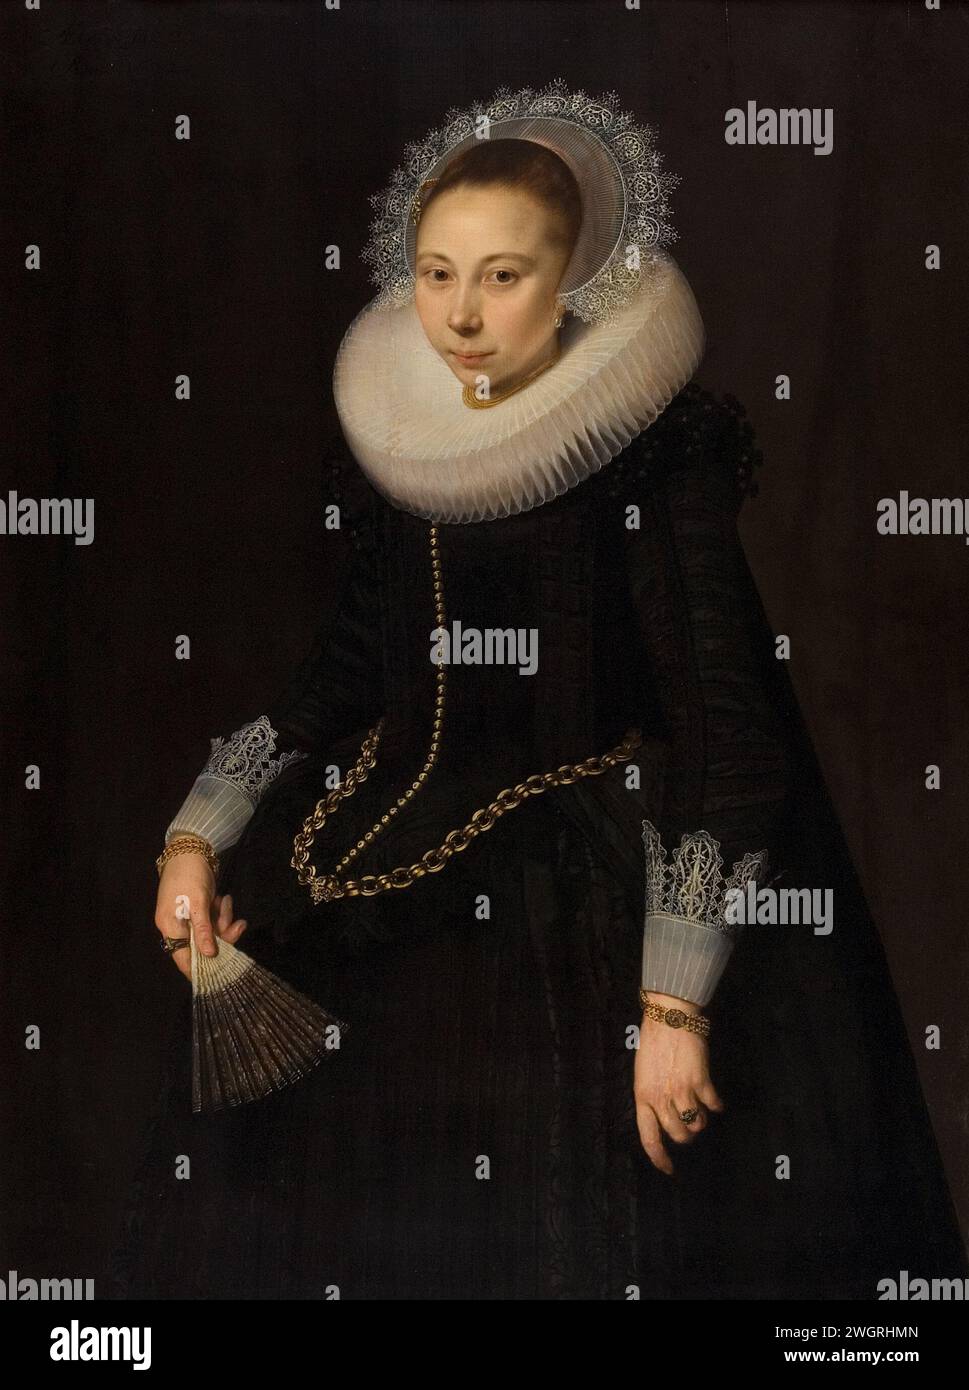 Porträt von Maria Overrijn van Schoterbosch (1599/1600-38), Cornelis van der Voort, 1622 Gemälde Porträt von Maria Overrijn van Schoterbosch (1599/1600-38), Ehefrau von Dirck Corver. Kniestück, links stehend, ein Bereich in der rechten Hand. Anhänger von SK-A-4764. Bereich. Ölfarbe (Farbe) historische Personen - BB - Frau Stockfoto